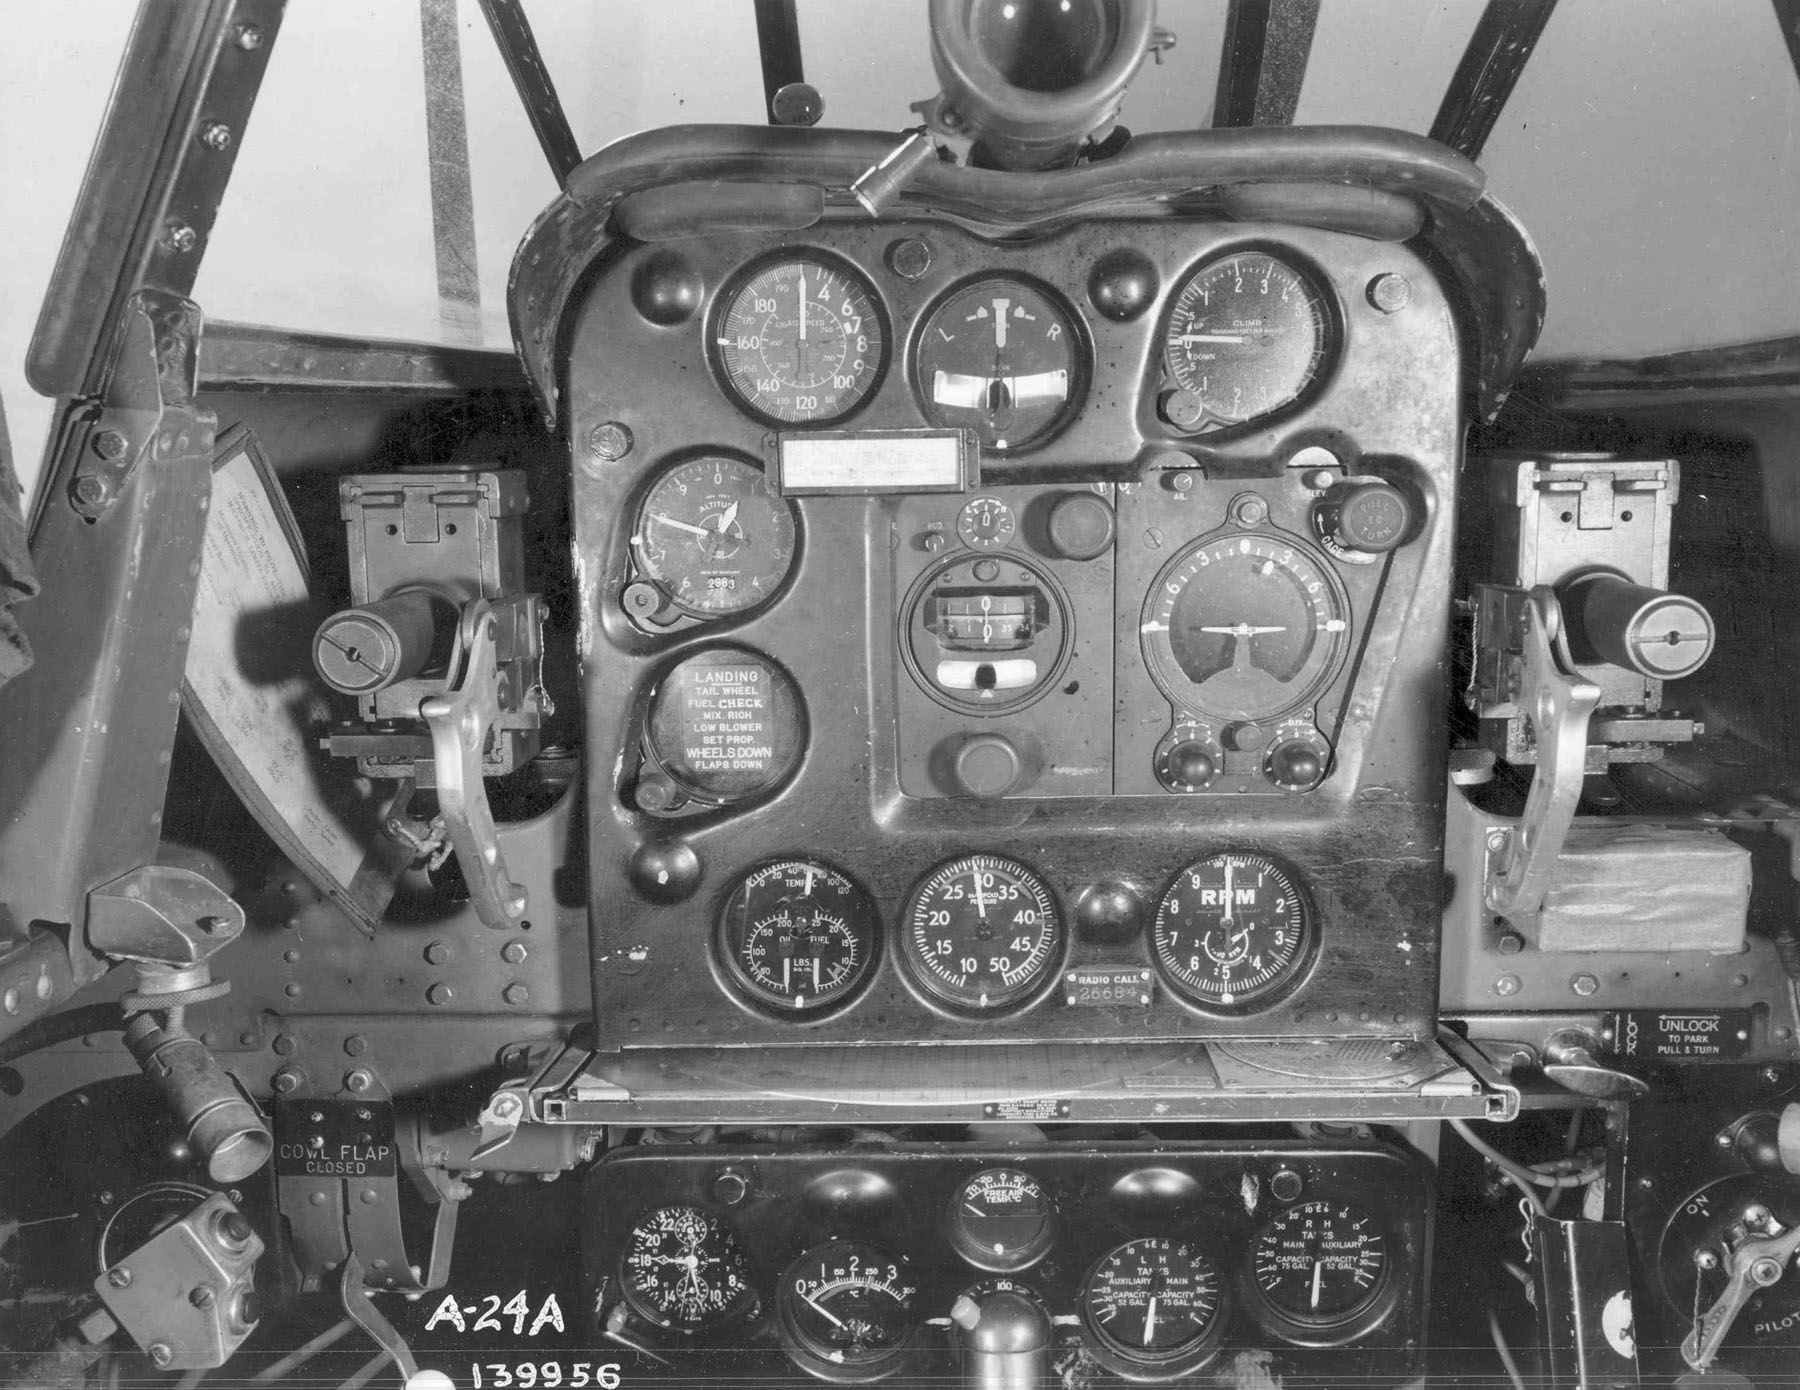 Douglas_A-24a_Cockpit